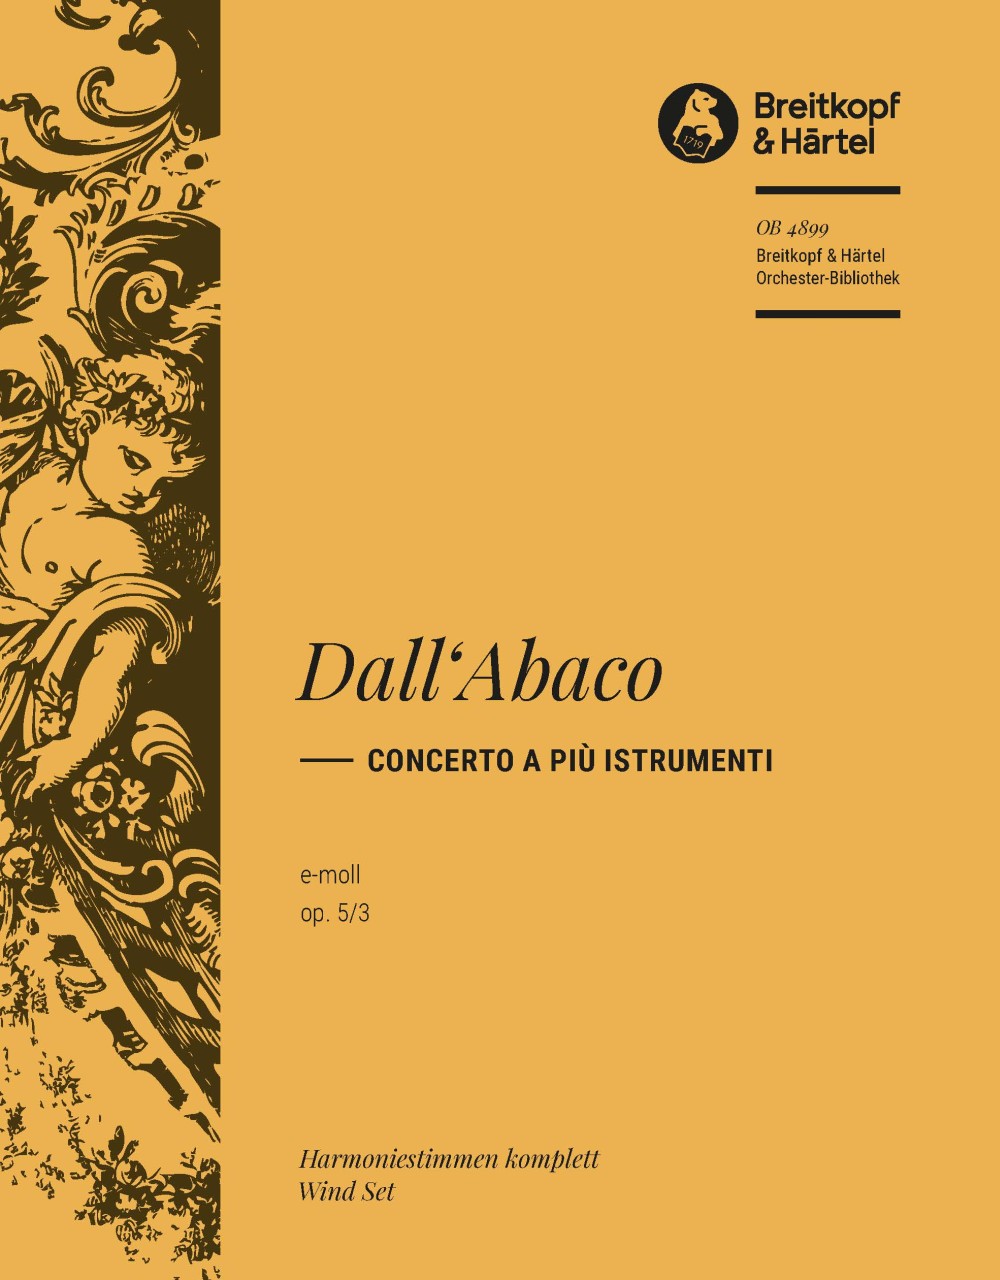 Concerto E-Moll Op. 5/3